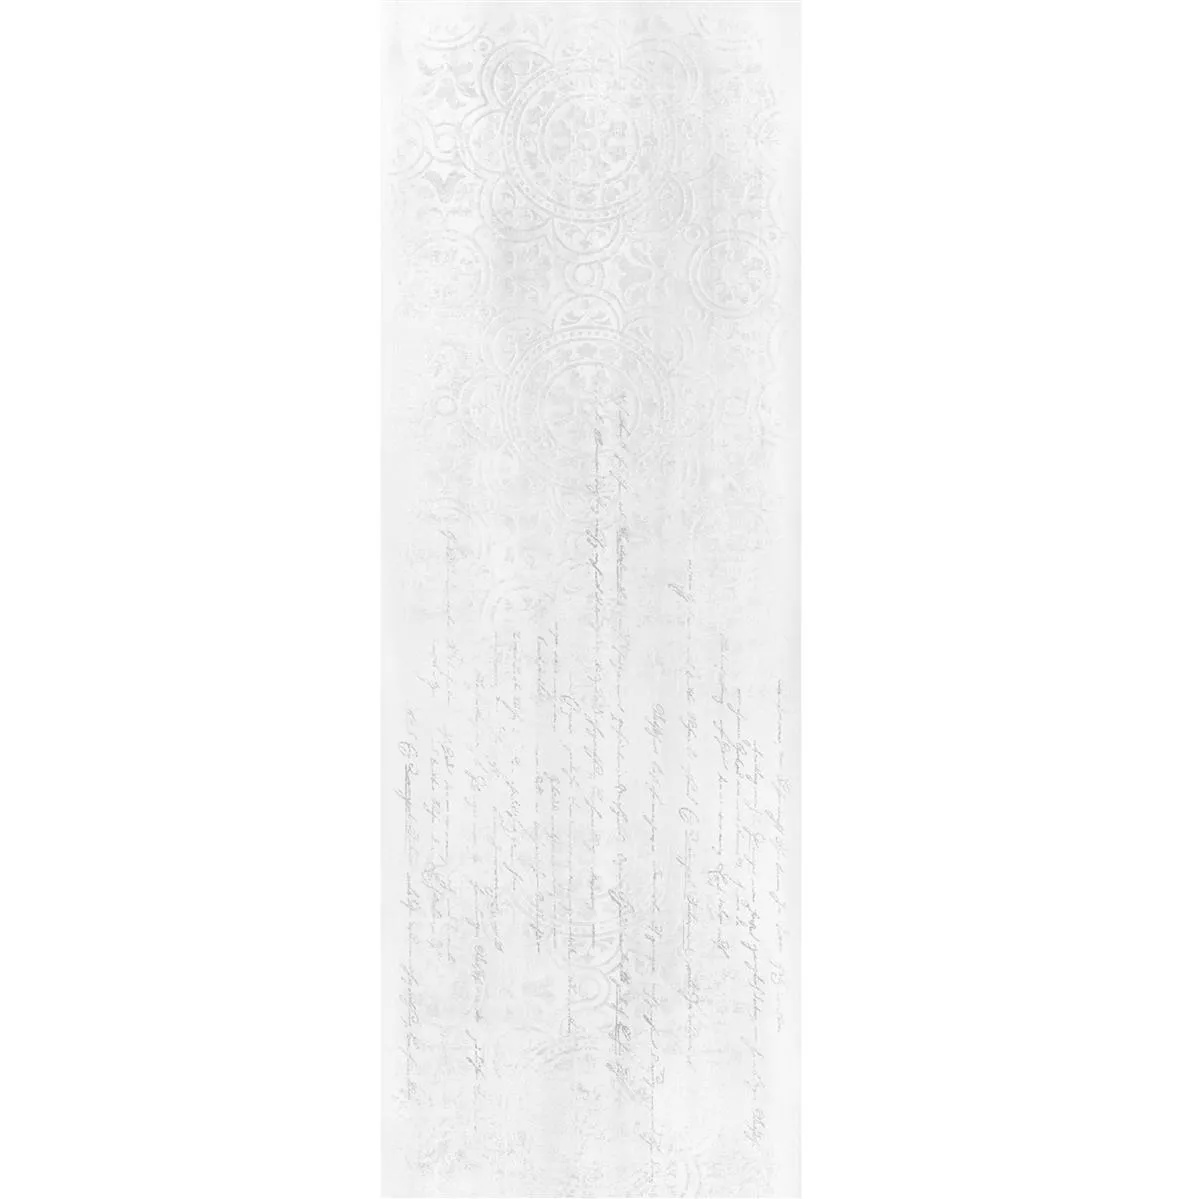 Πλακάκι Tοίχου Anderson Φυσική άκρη 30x90cm Ασπρο Ντεκόρ